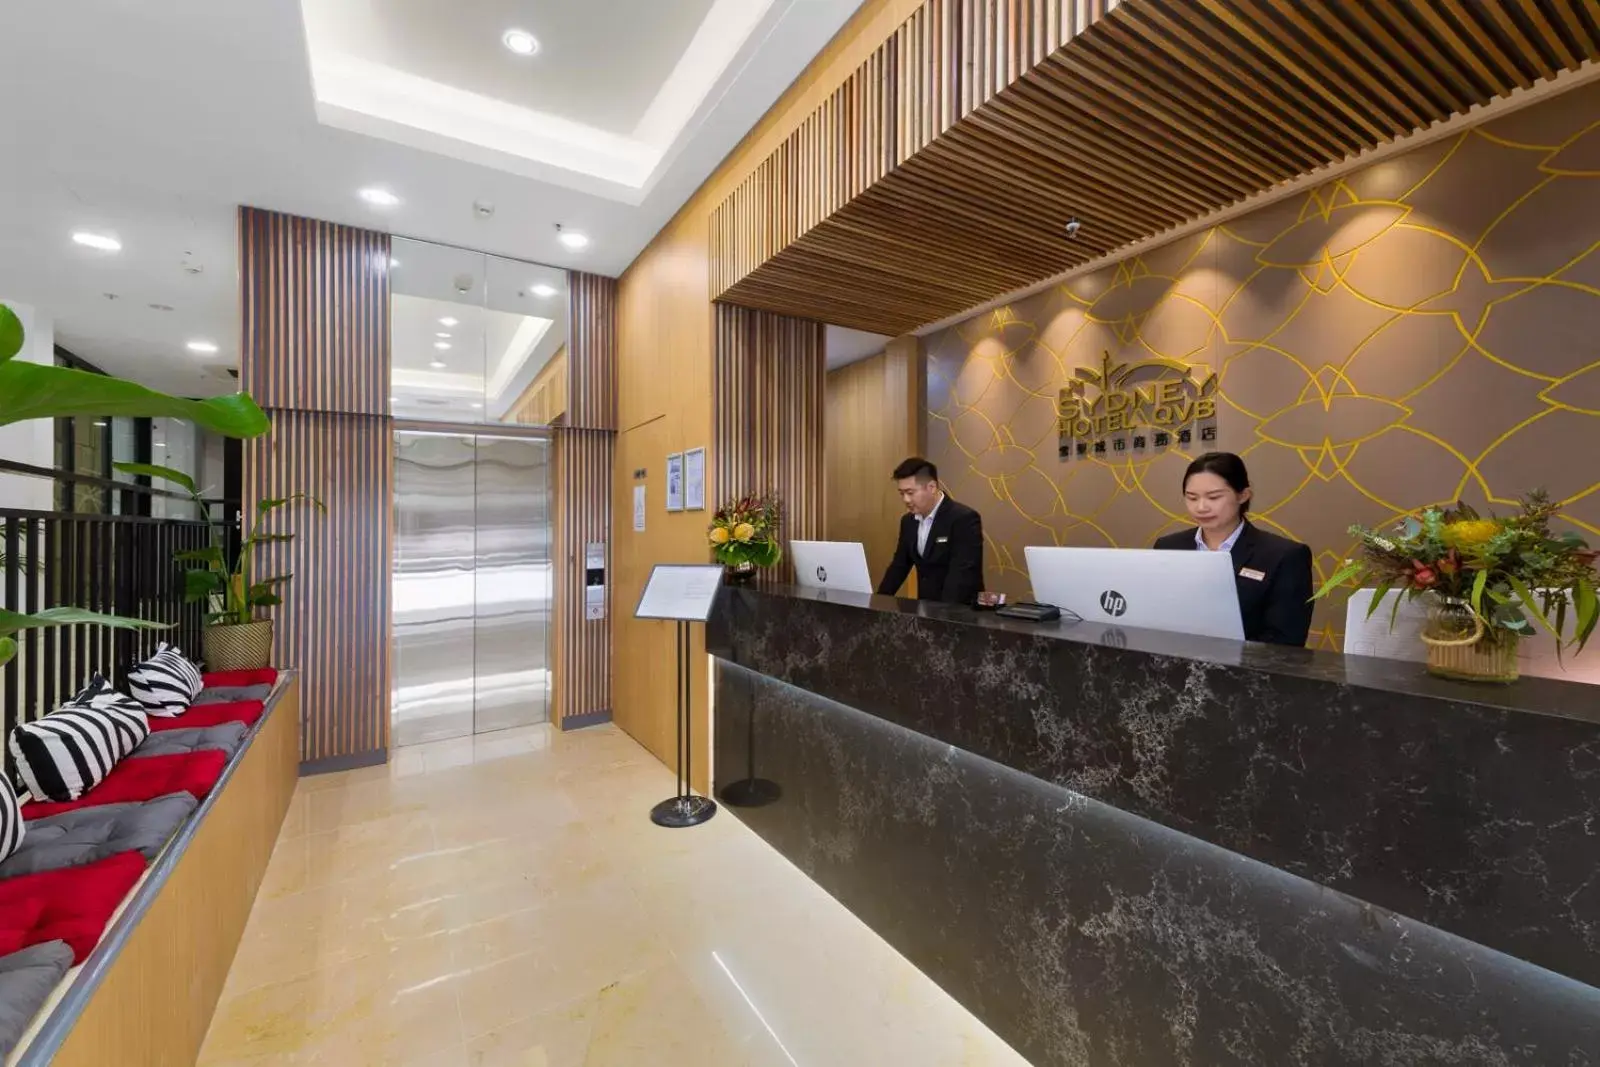 Lobby or reception, Lobby/Reception in YEHS Hotel Sydney QVB